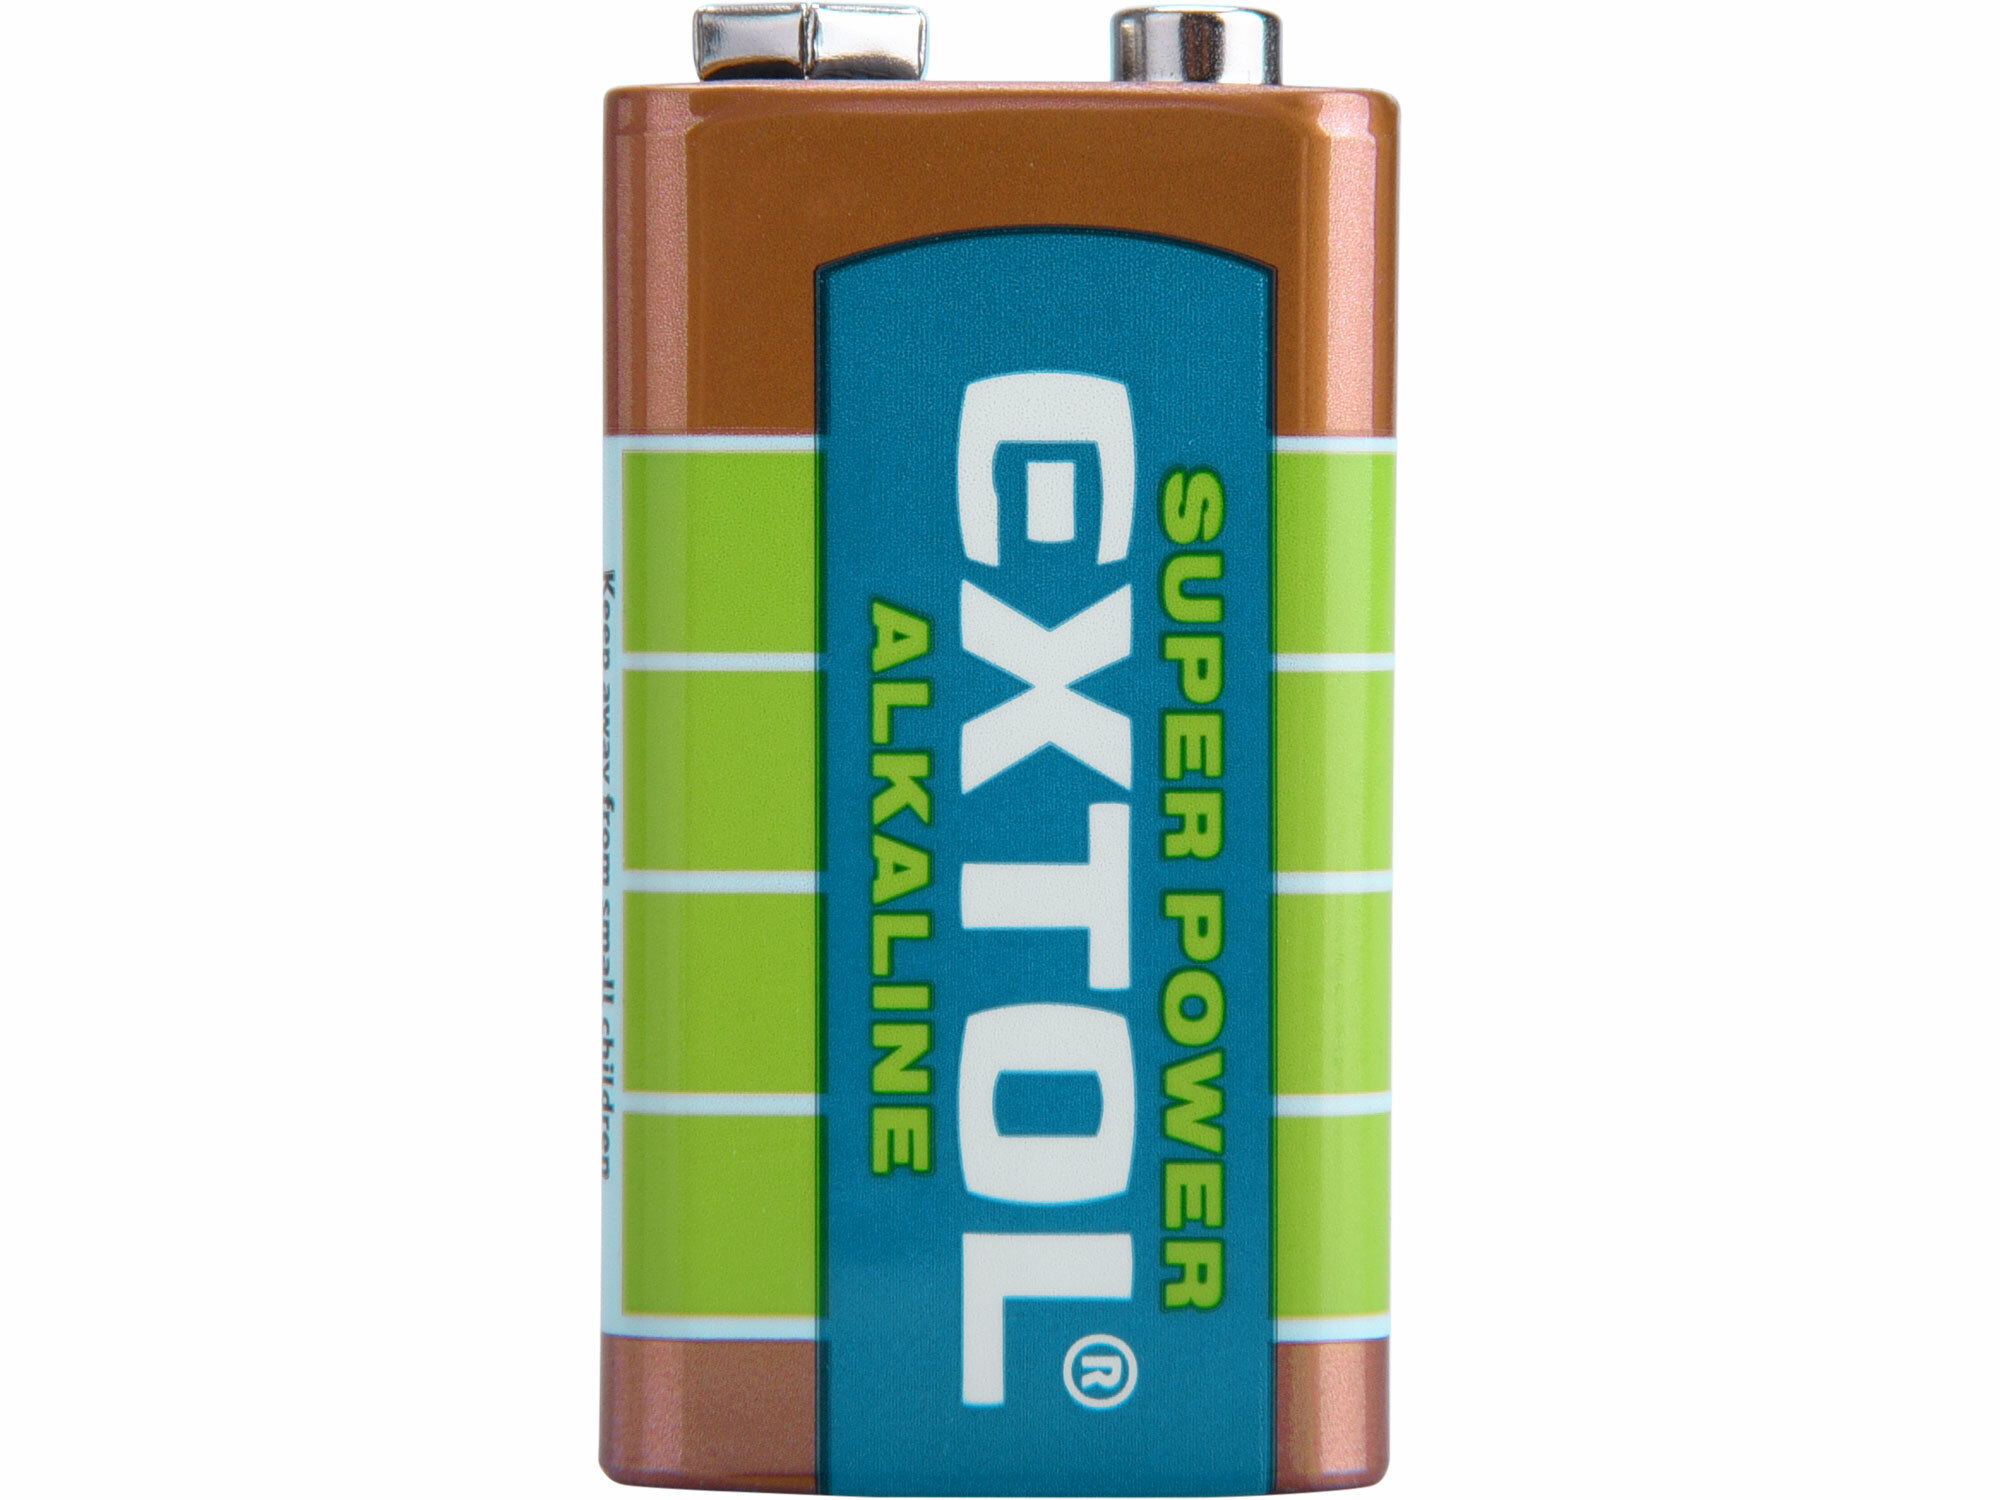 Batéria alkalická, 9V, typ 6LR61, EXTOL ENERGY